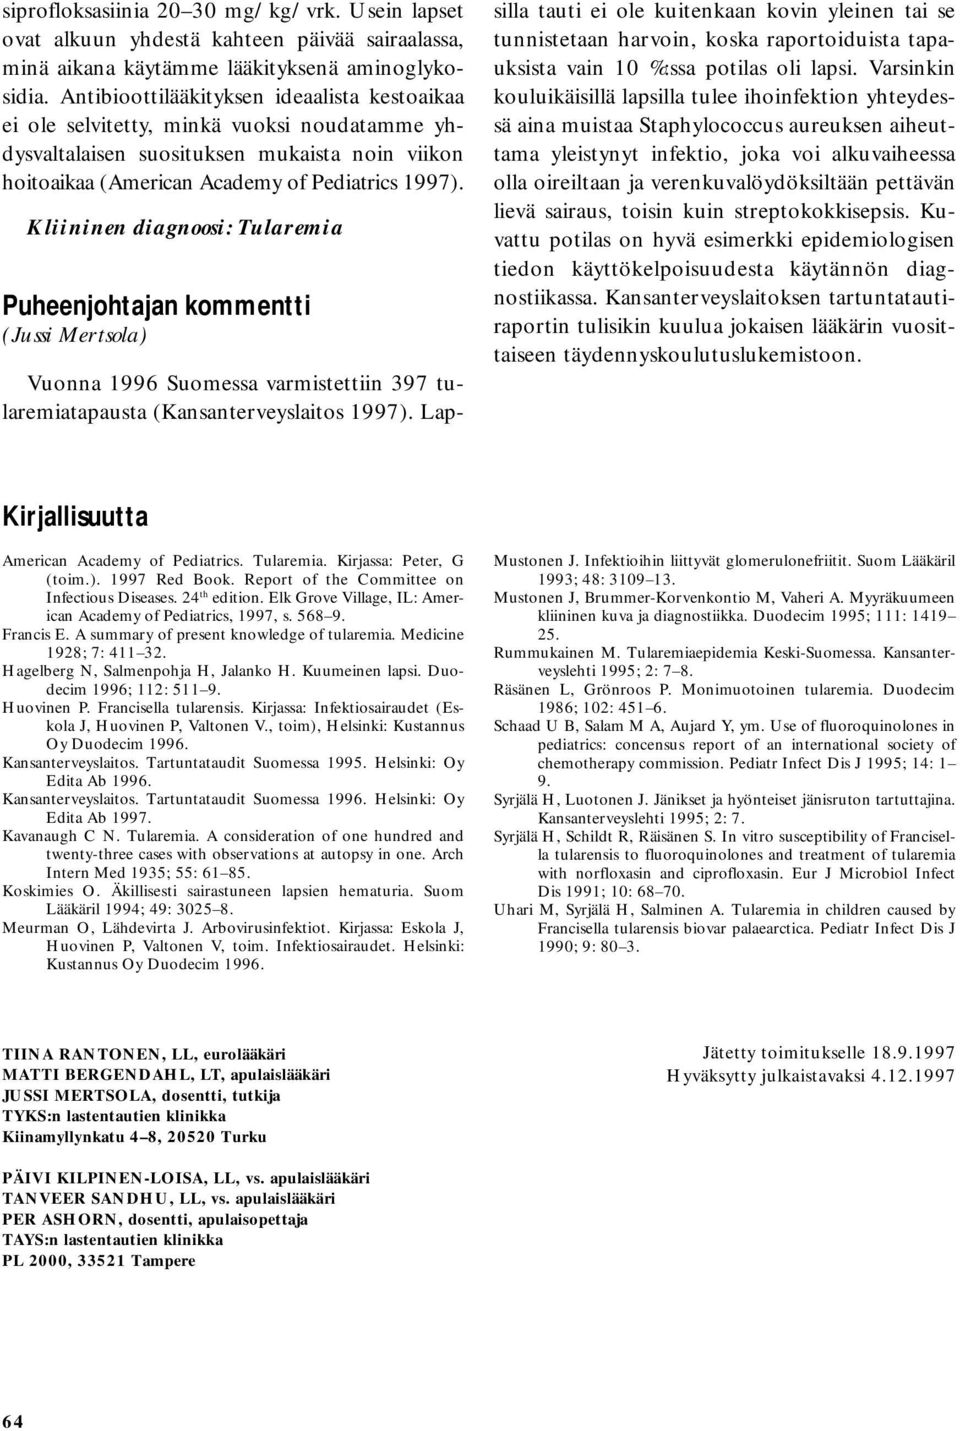 Kliininen diagnoosi: Tularemia Puheenjohtajan kommentti (Jussi Mertsola) Vuonna 1996 Suomessa varmistettiin 397 tularemiatapausta (Kansanterveyslaitos 1997).